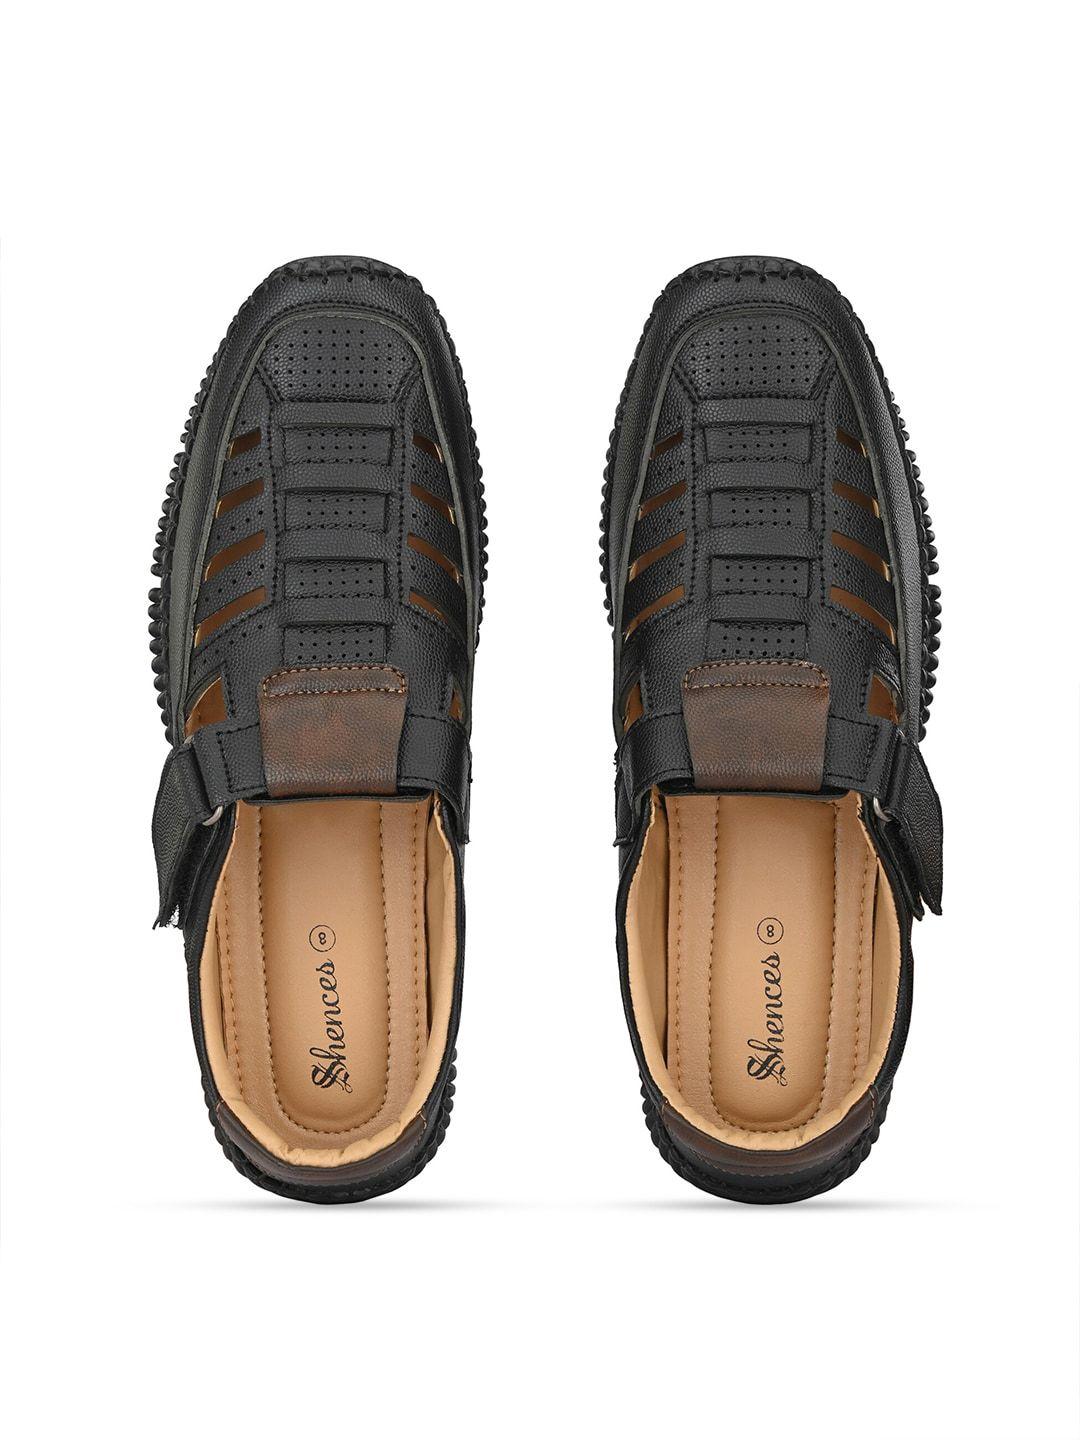 shences-men-shoe-style-sandals